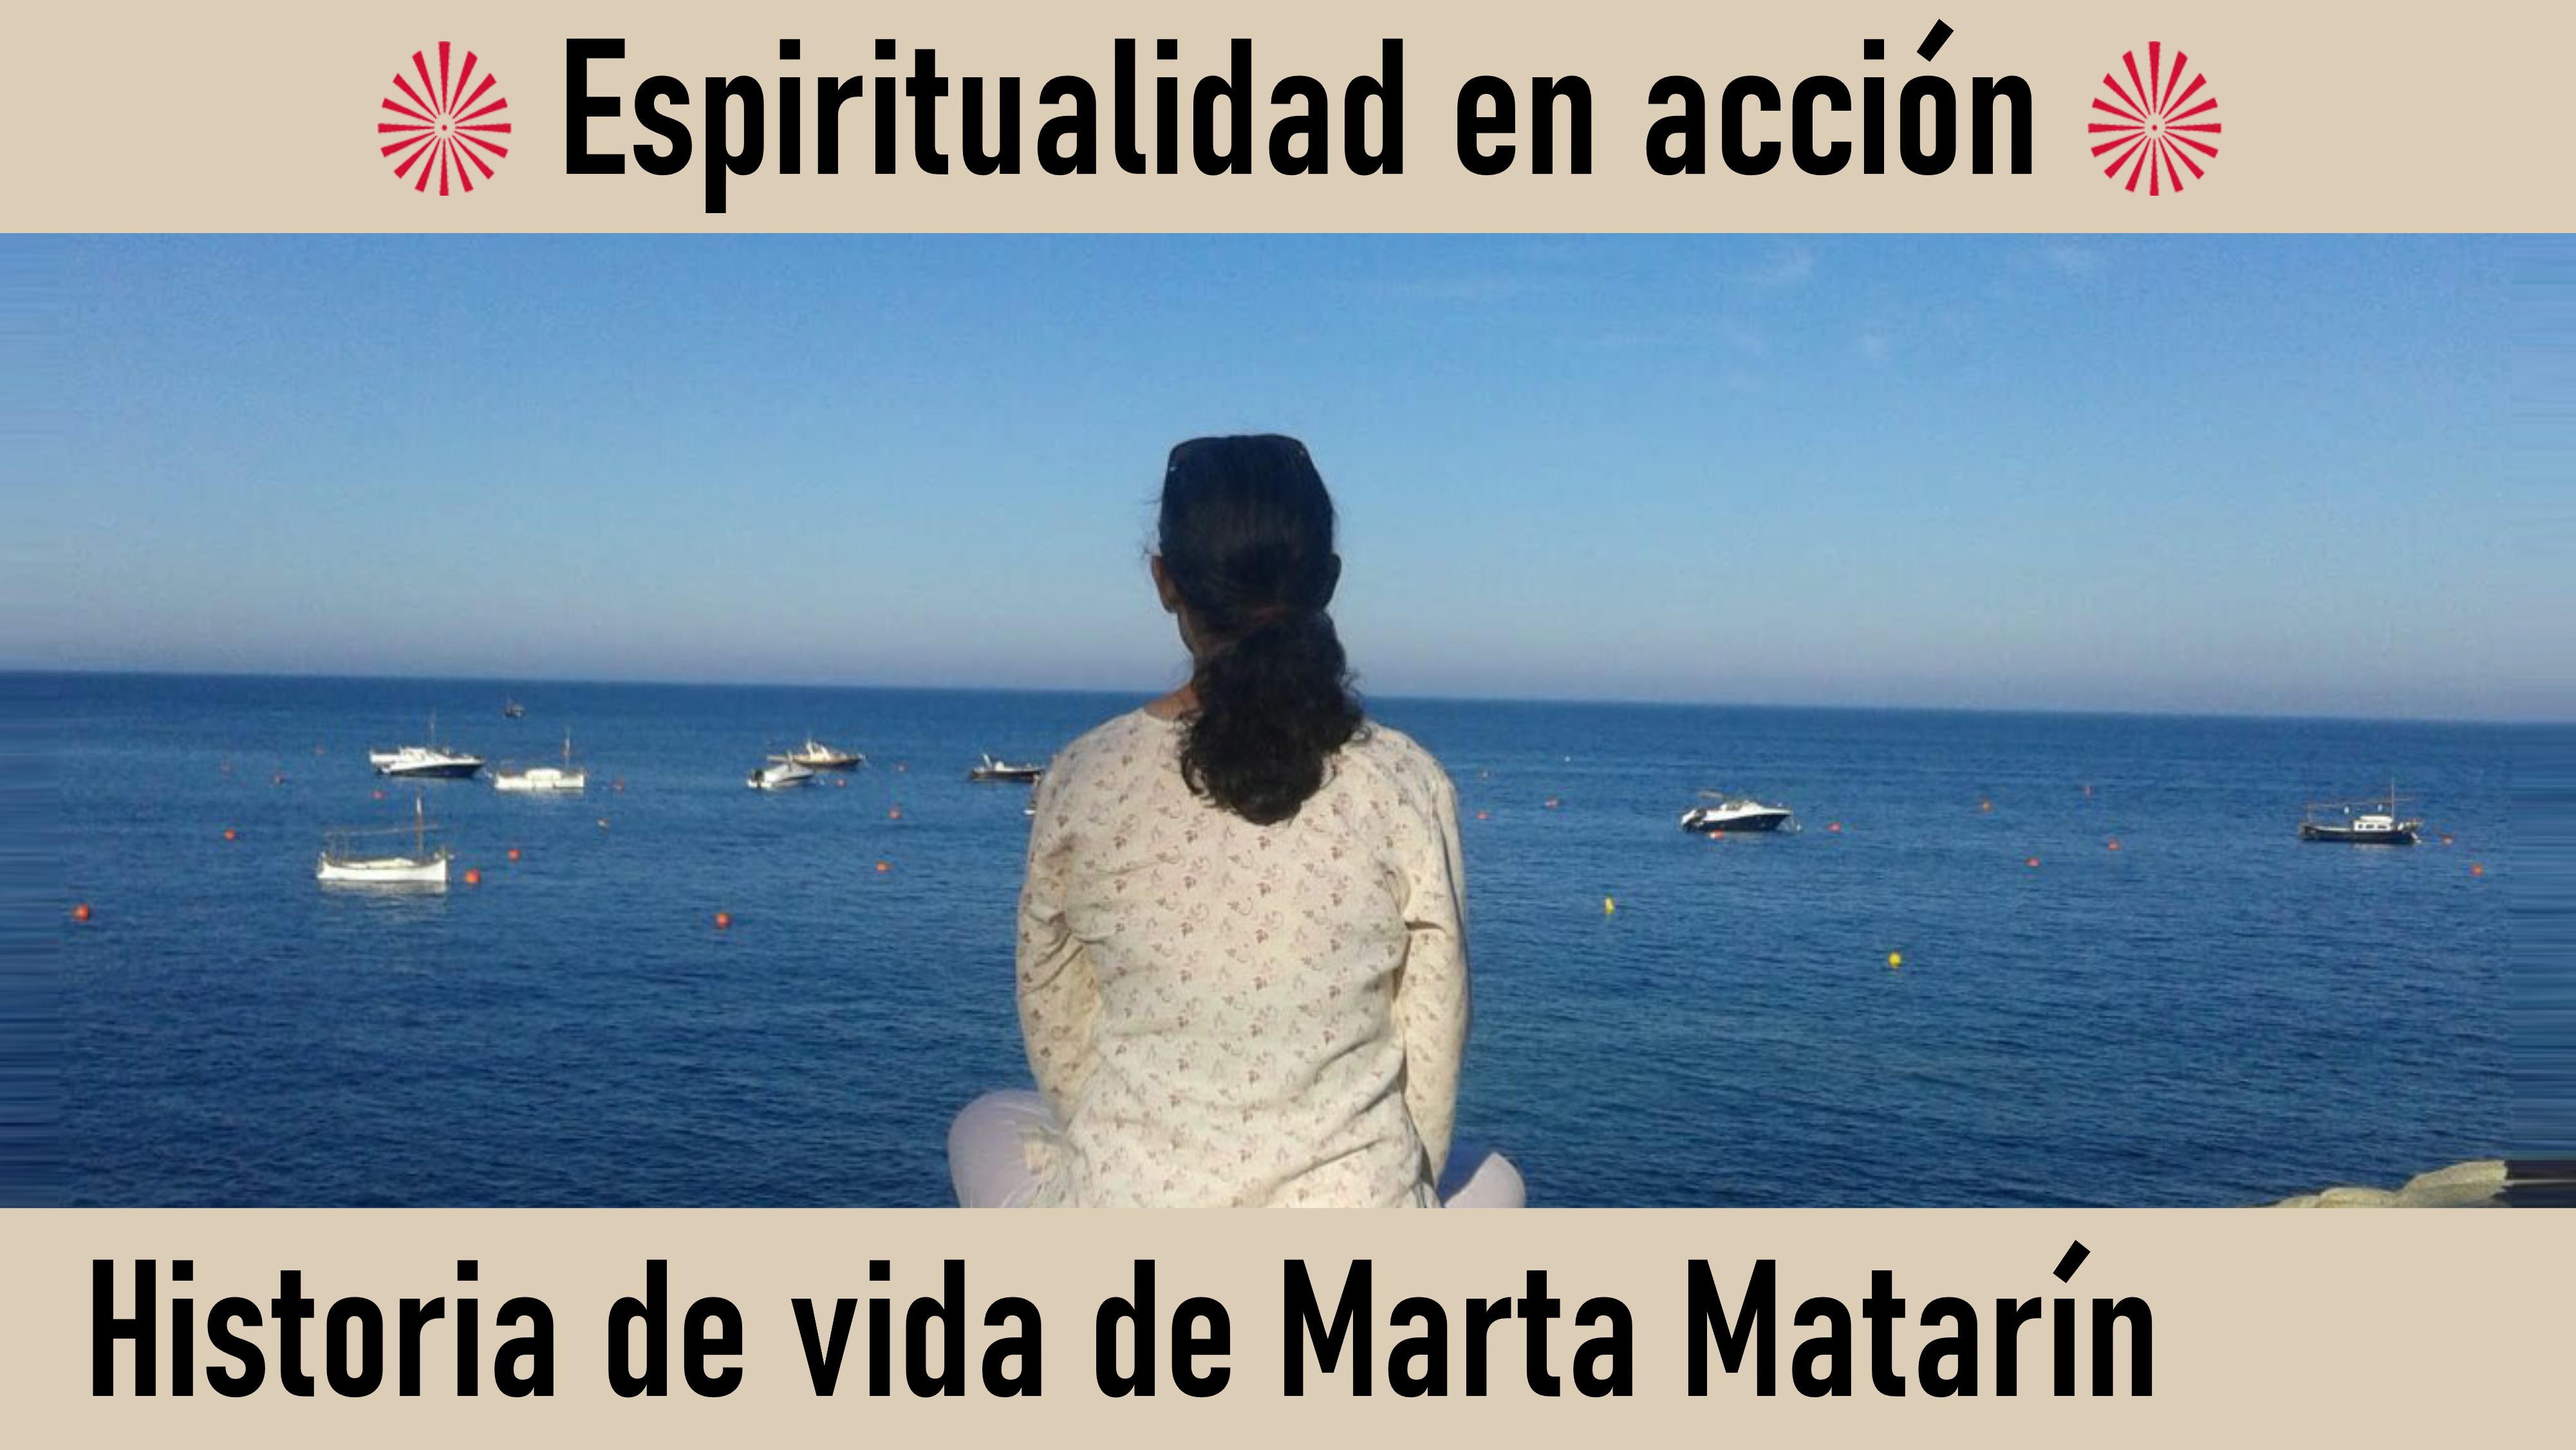 Espiritualidad en acción. Historia de vida de Marta Matarín (12 Junio 2020) On-line desde Barcelona